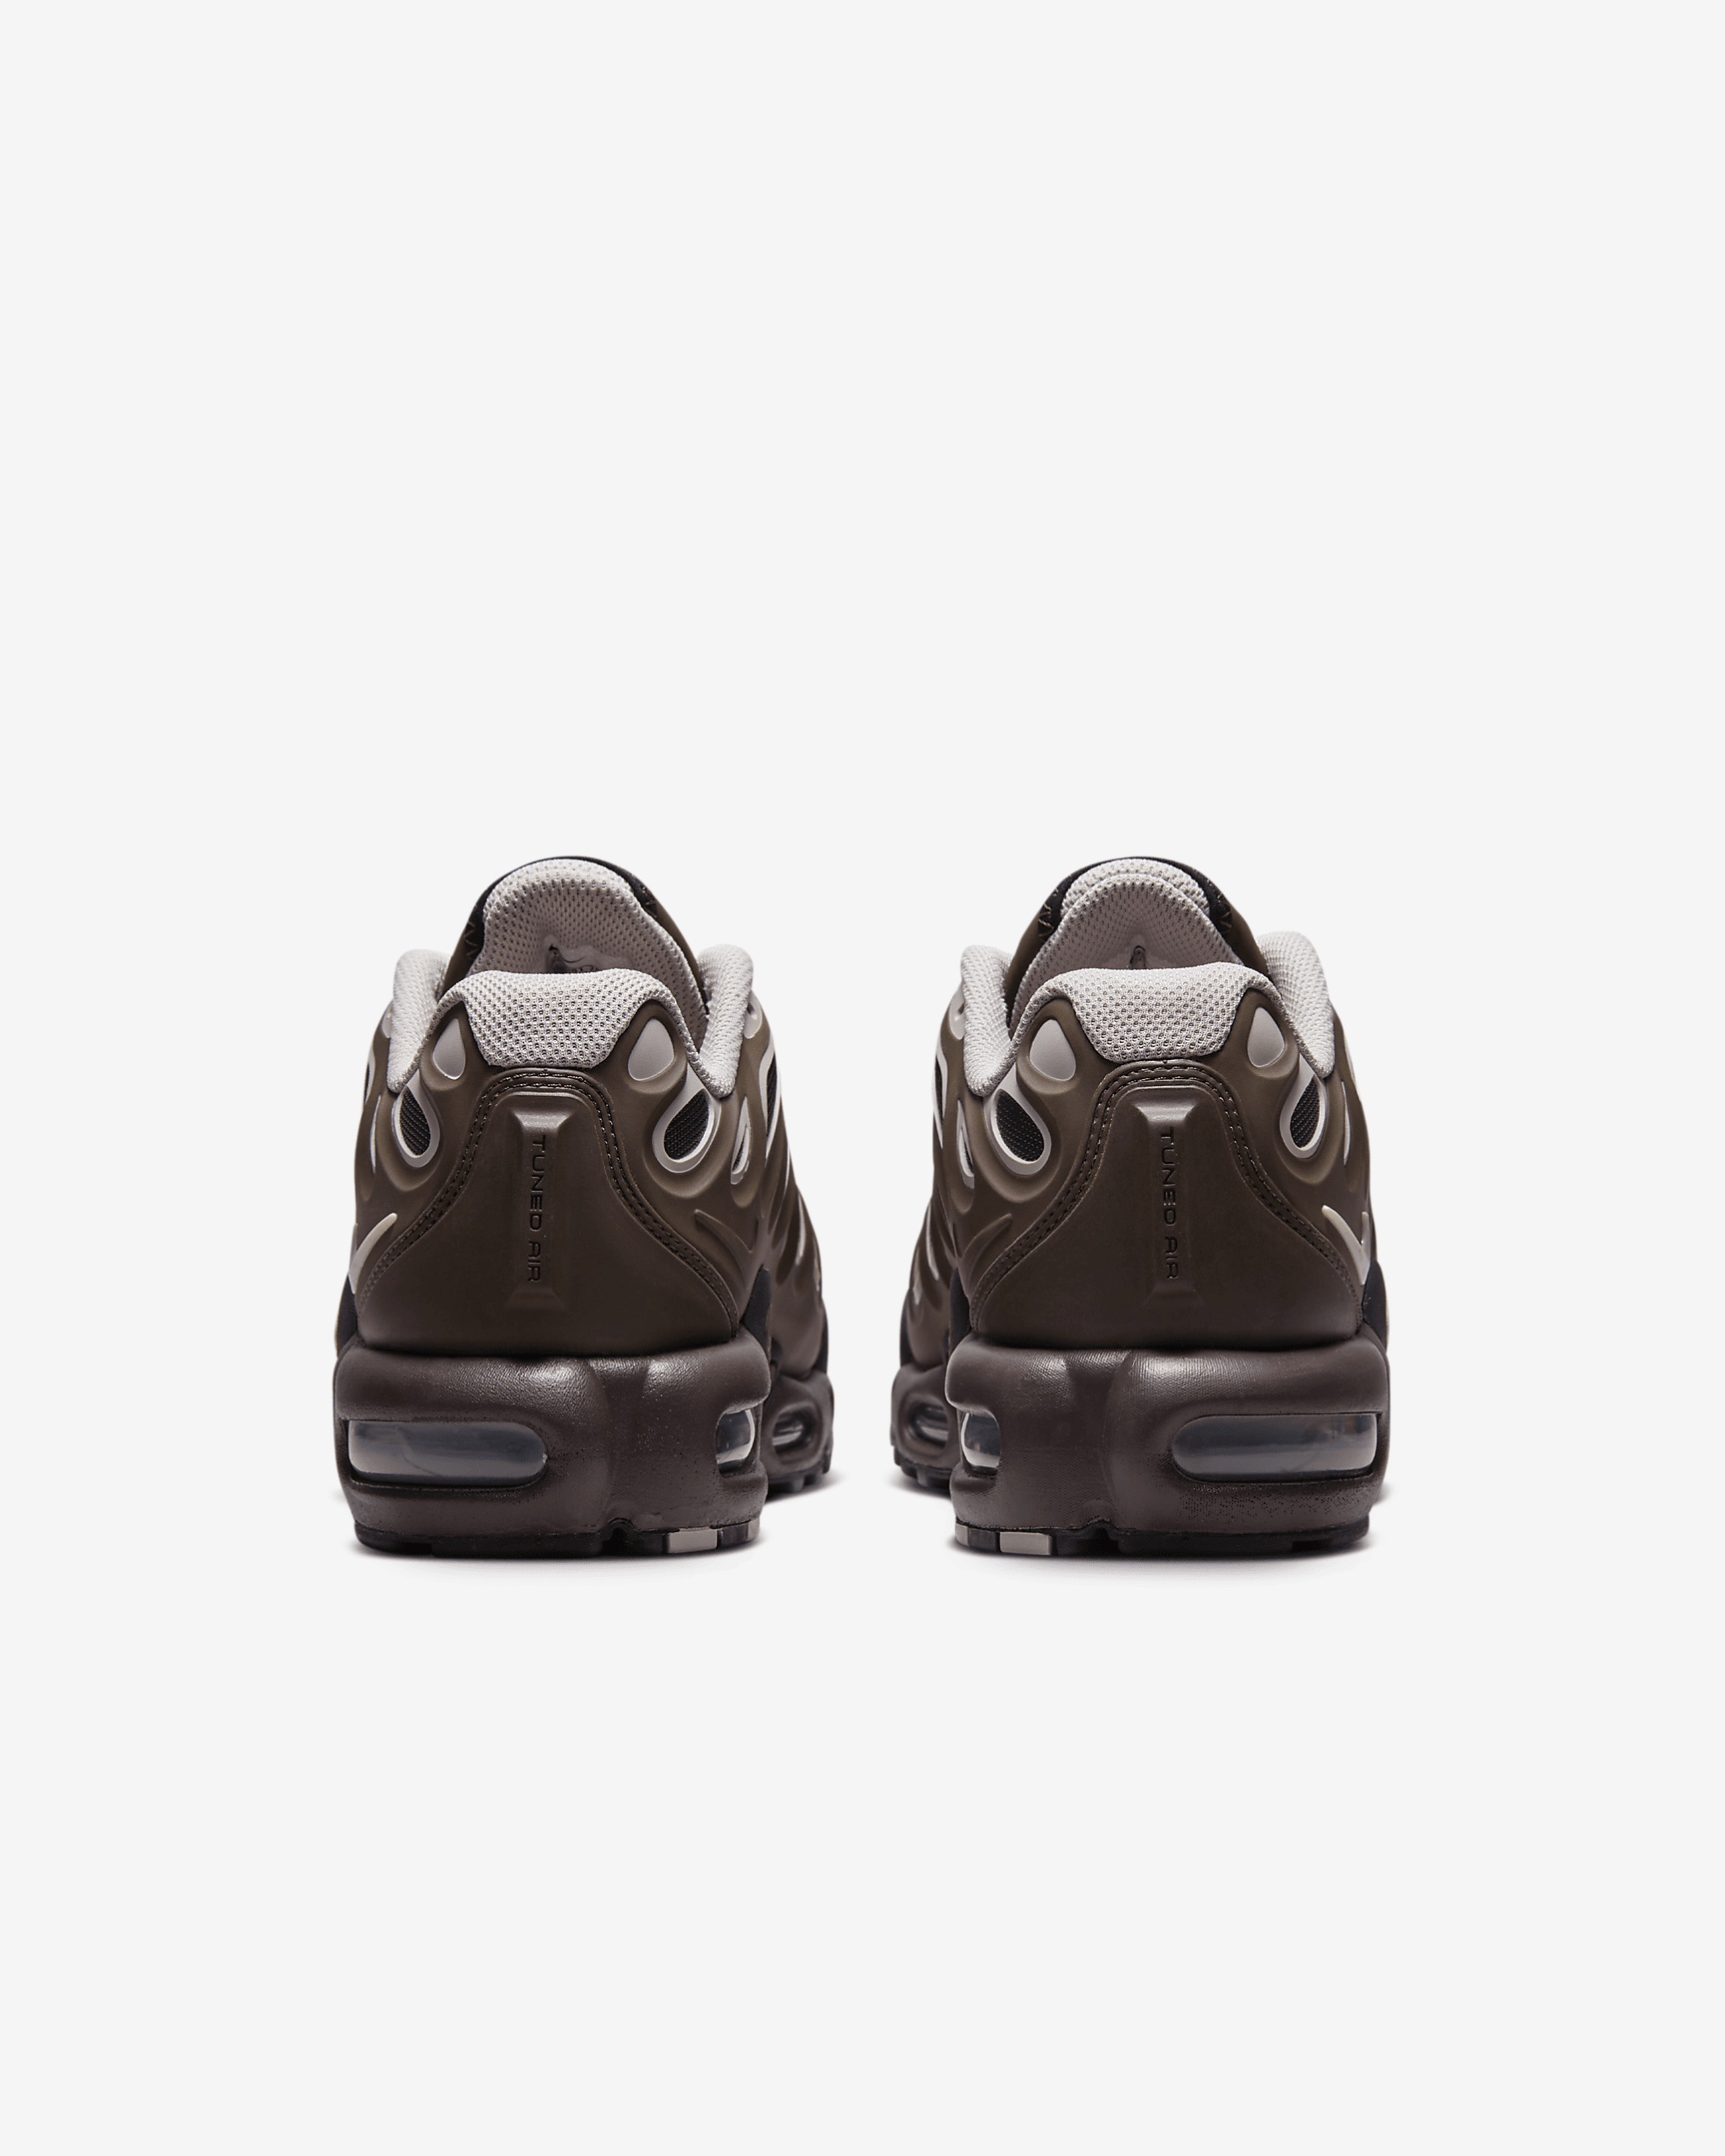 Nike Women's Air Max Plus Drift Shoes - 7